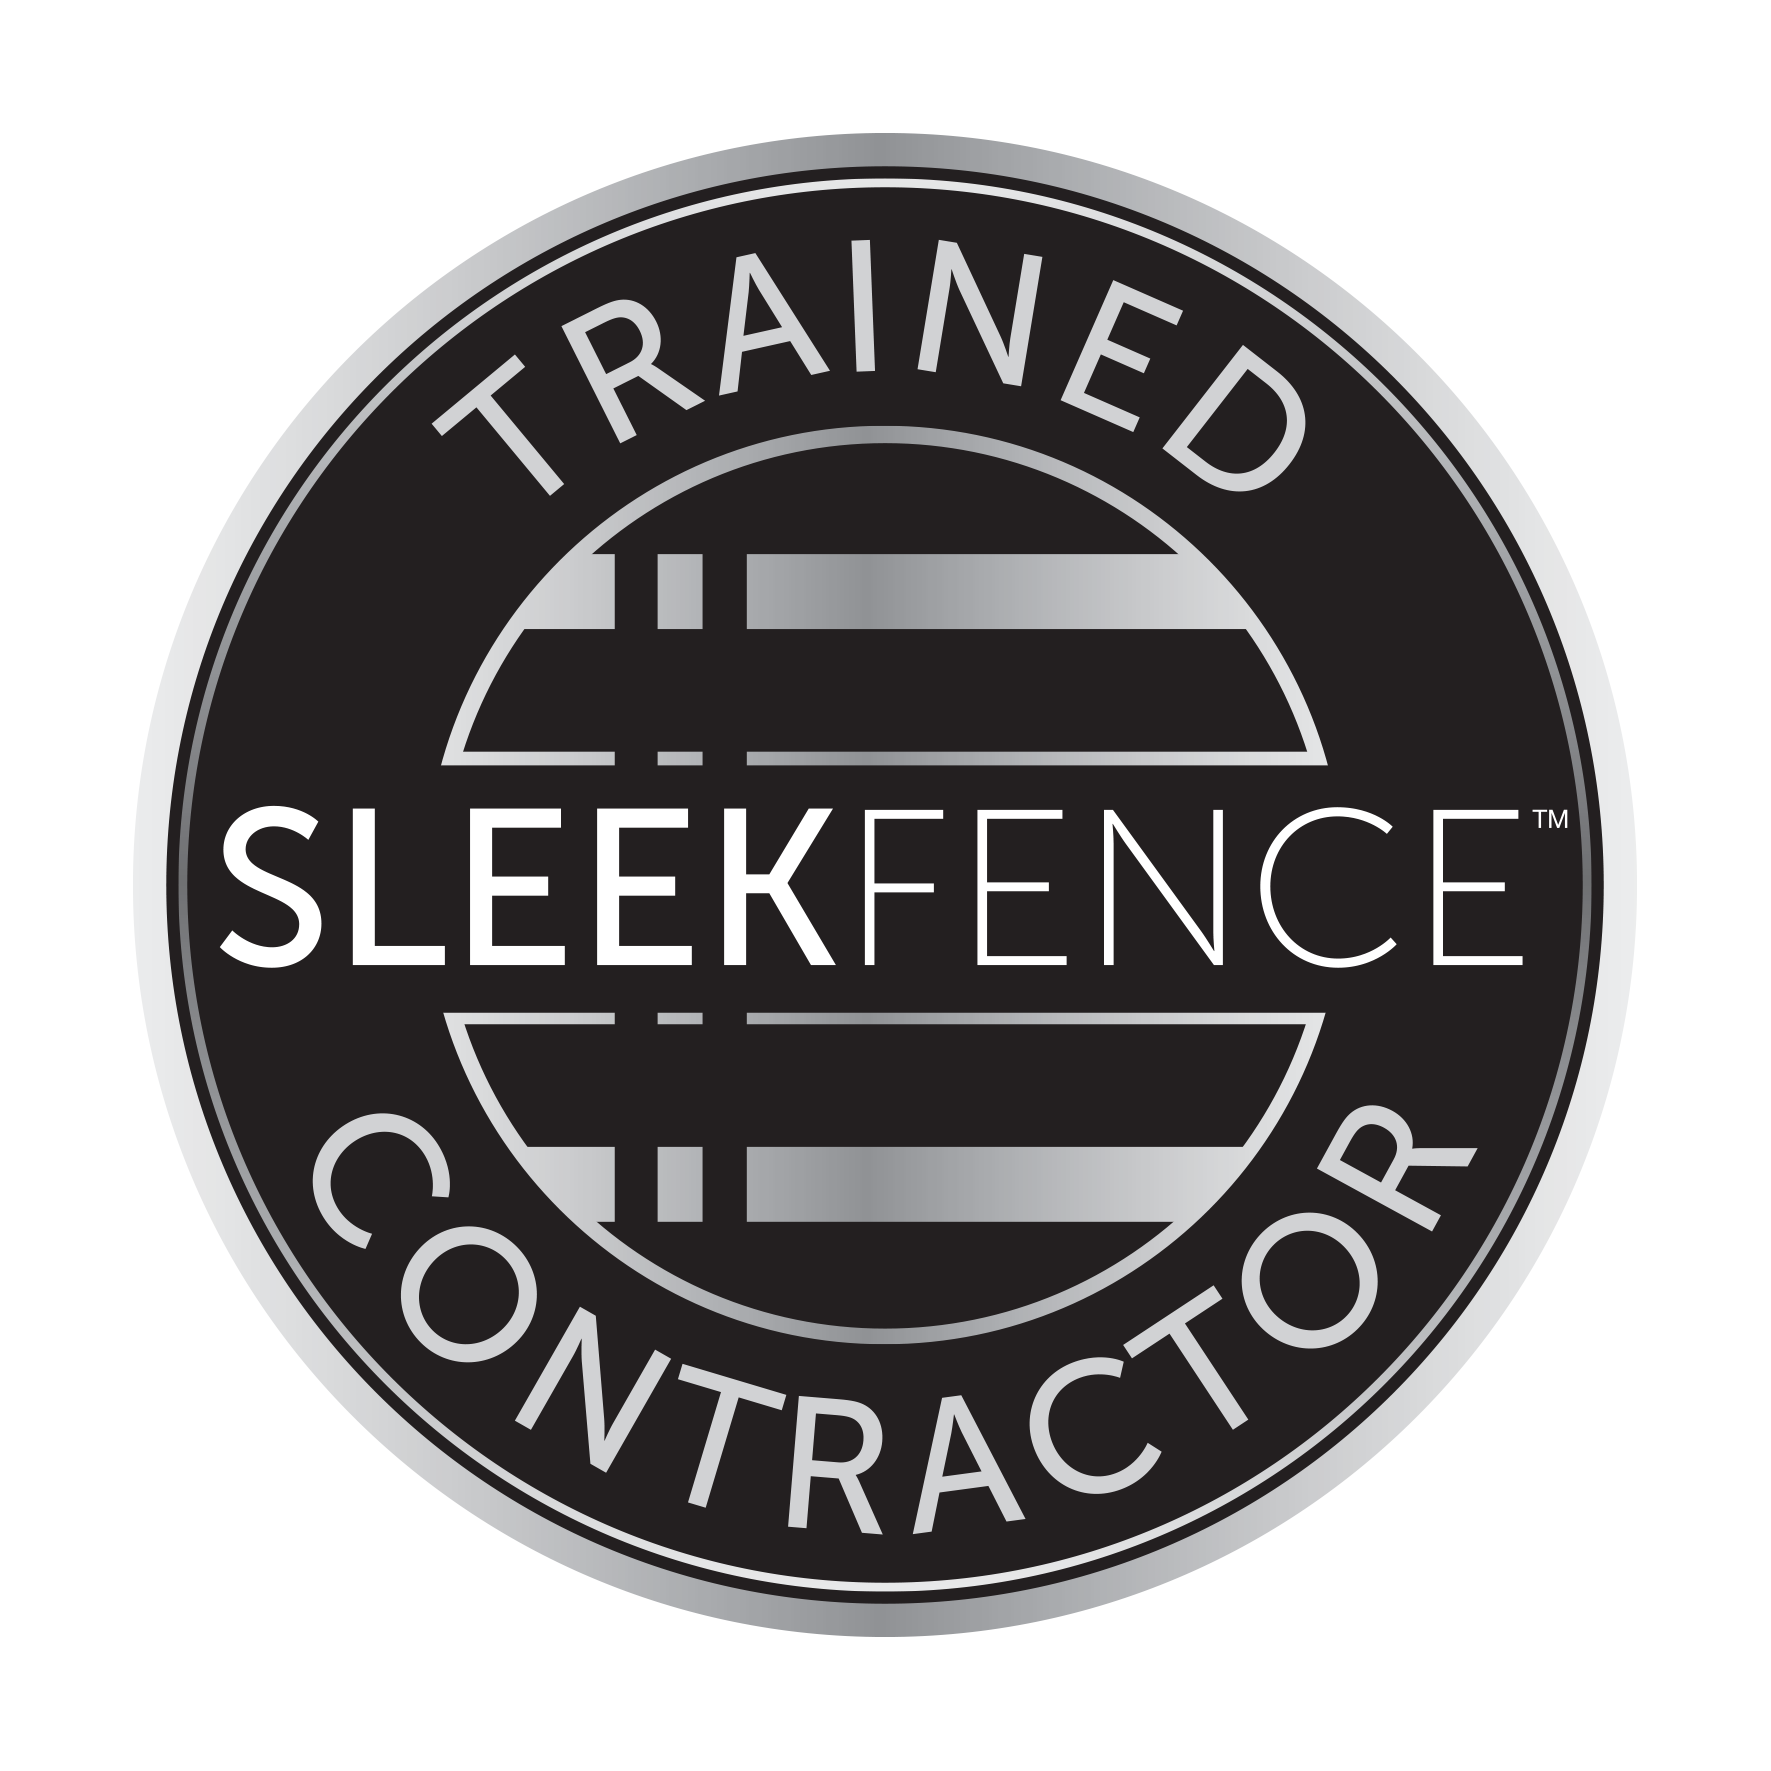 Trained SLEEKFENCE contractor badge